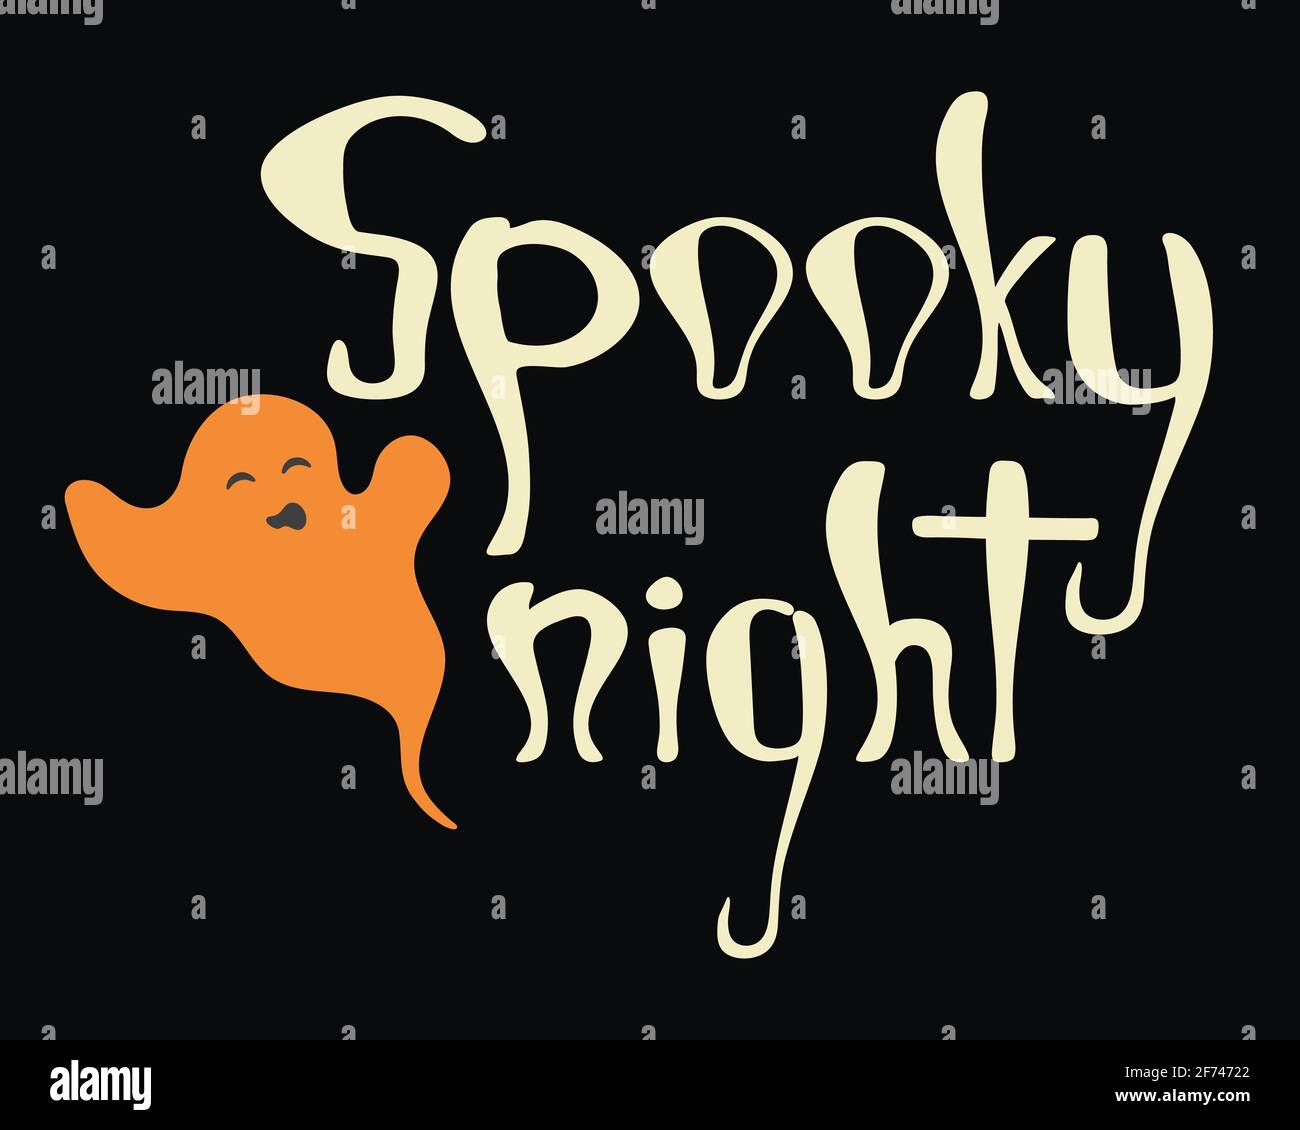 Spooky night halloween poster. Stock Vector